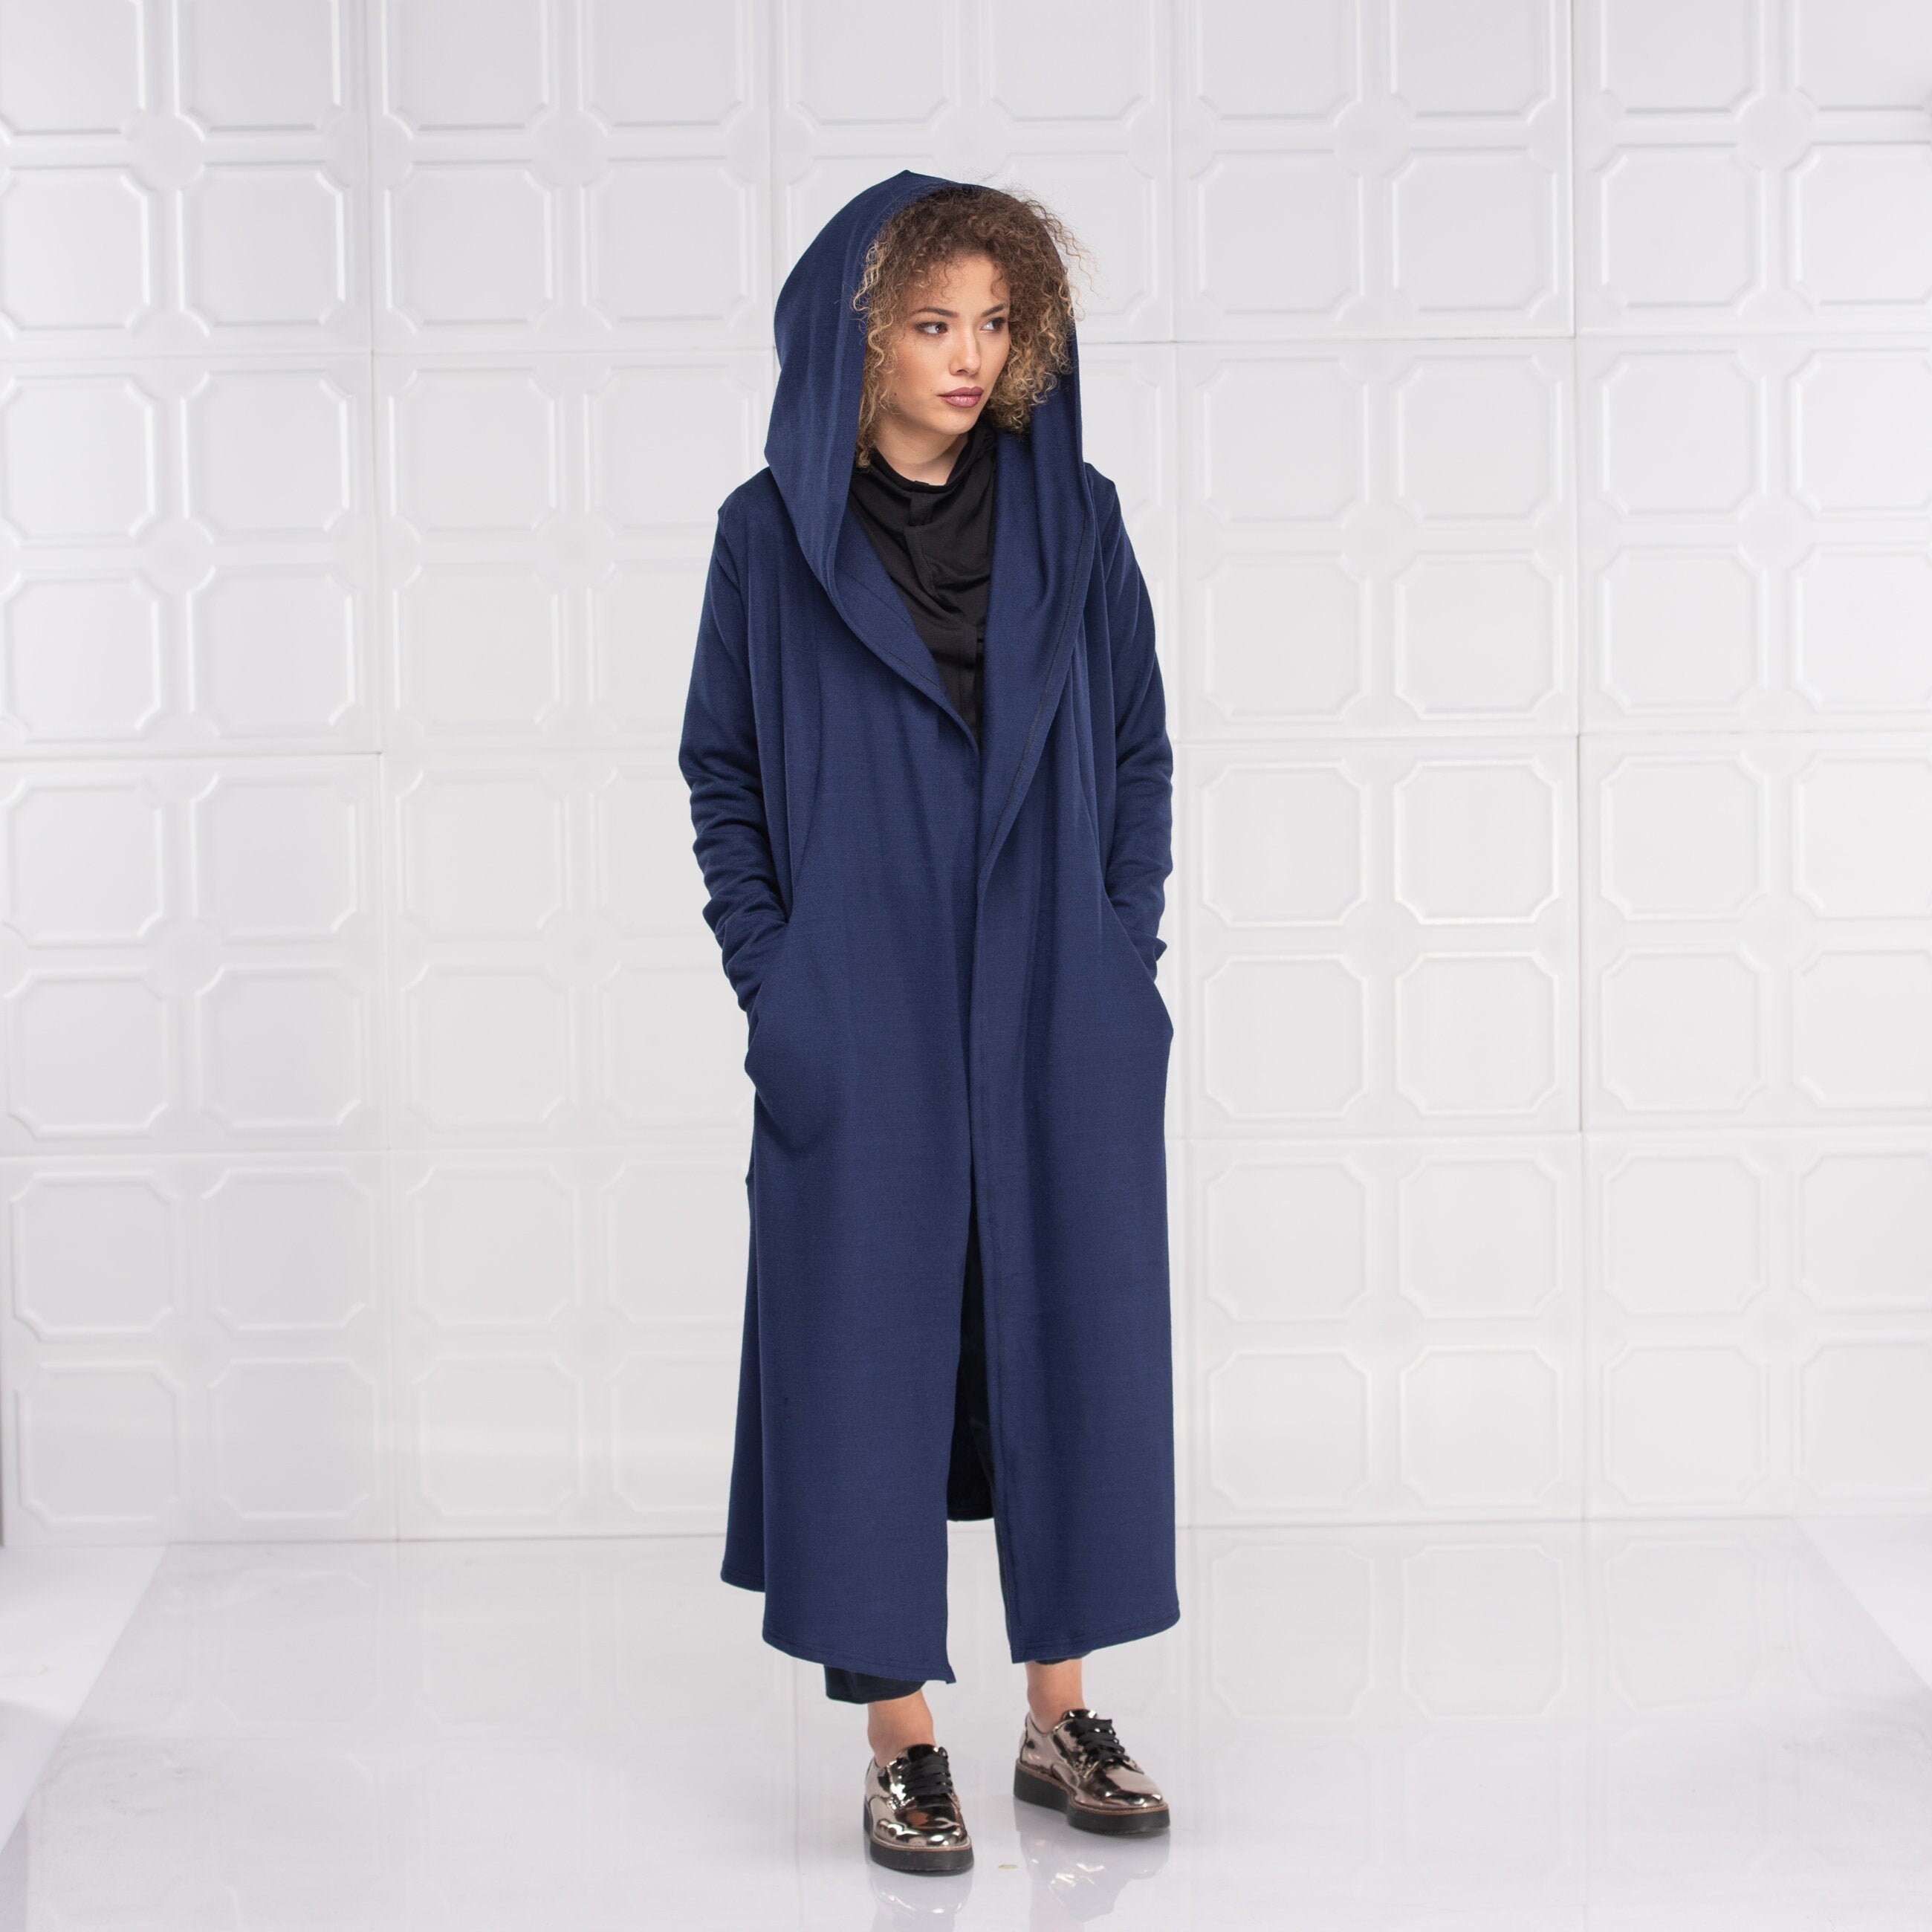 Wool Cloak Hooded Wool Coat Kimono Cardigan Wool Hoodie | Etsy